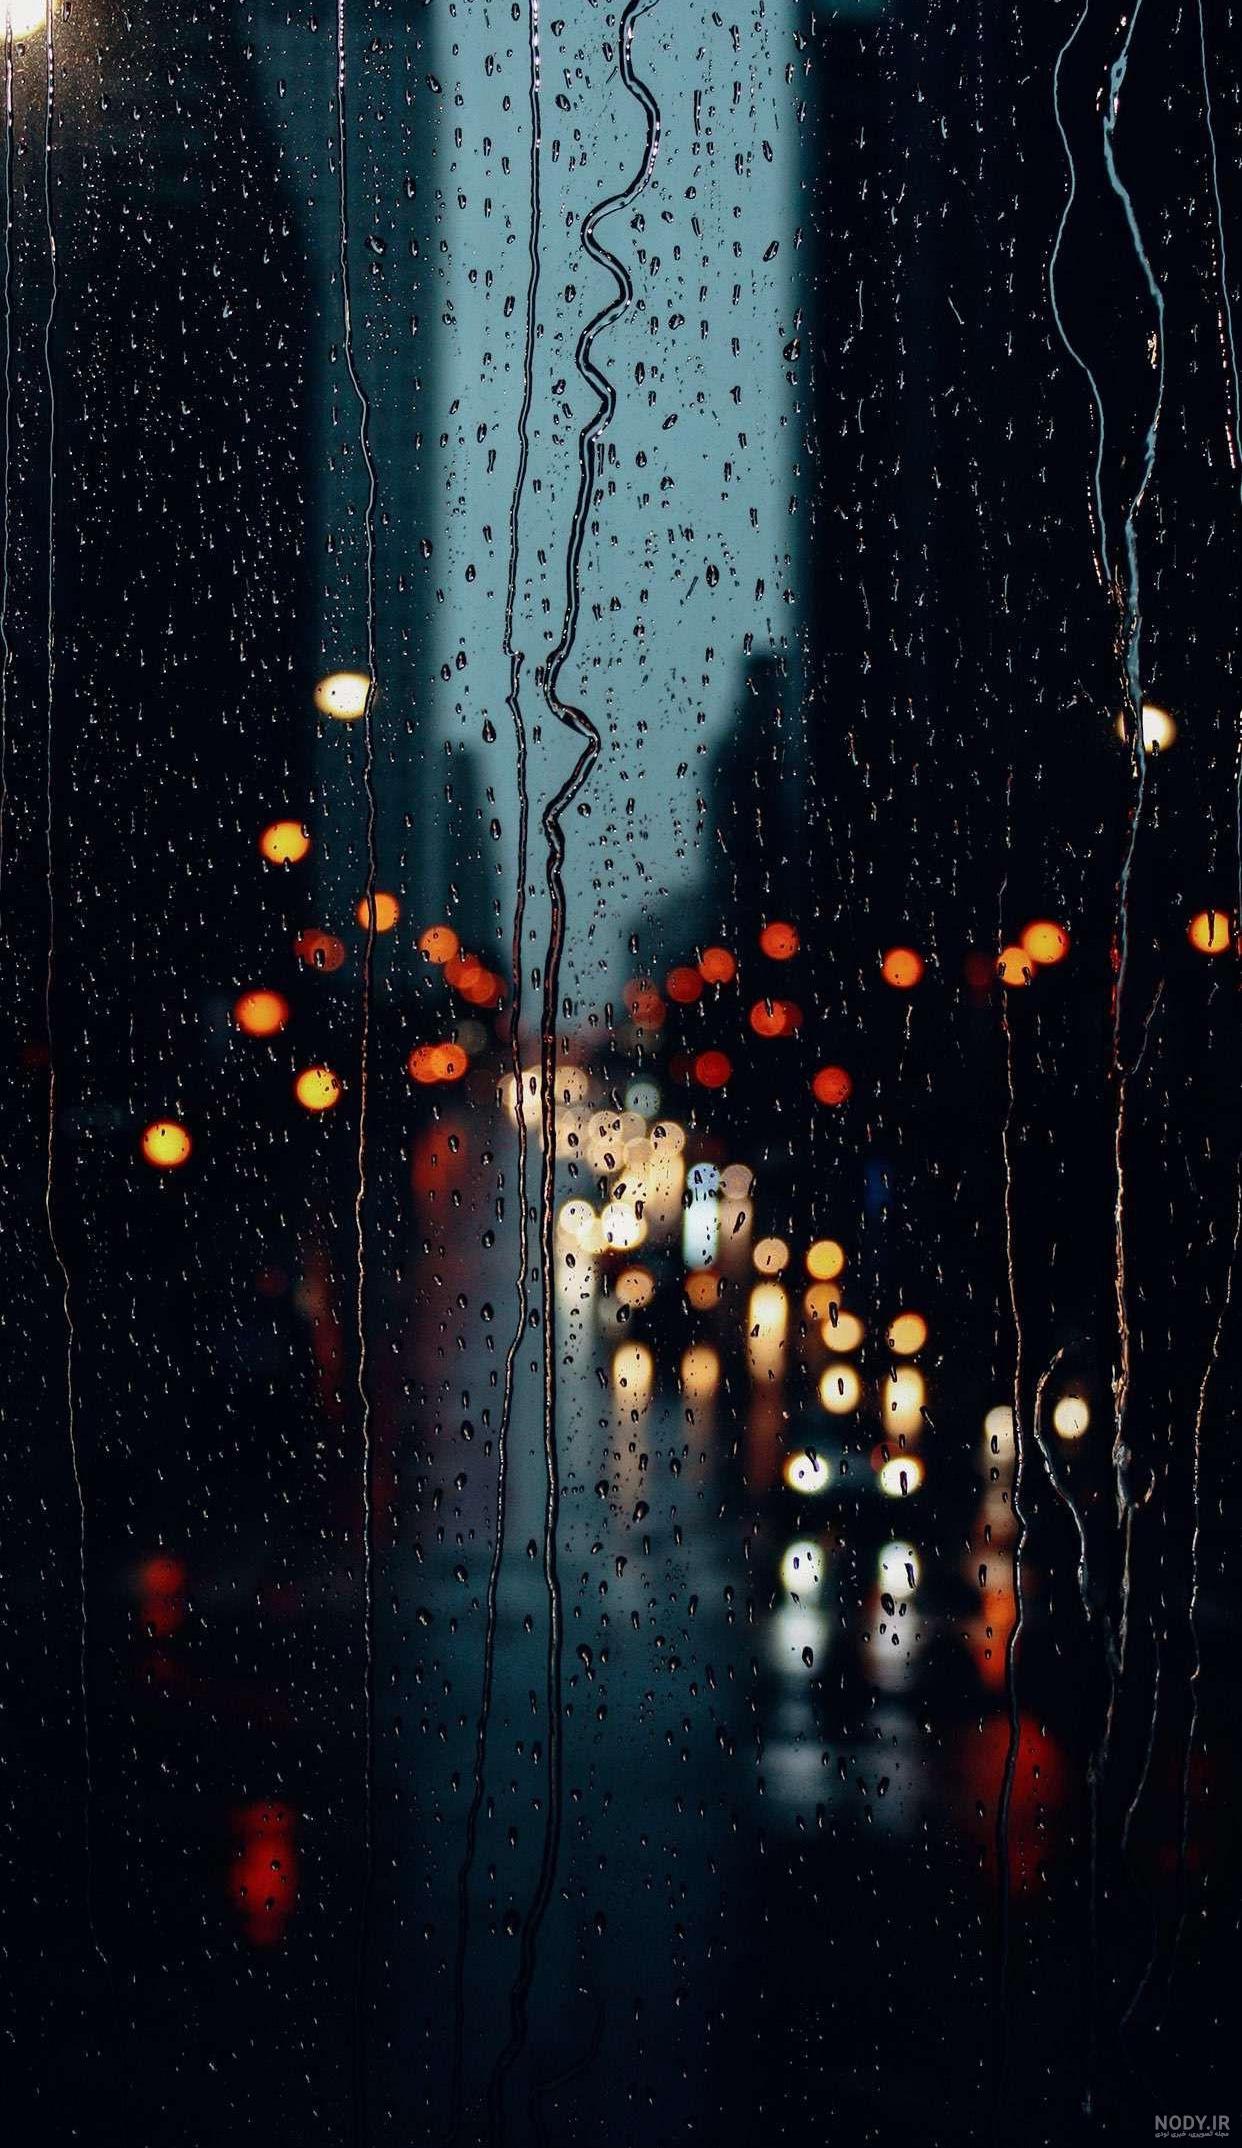 پروفایل عکس باران و پنجره